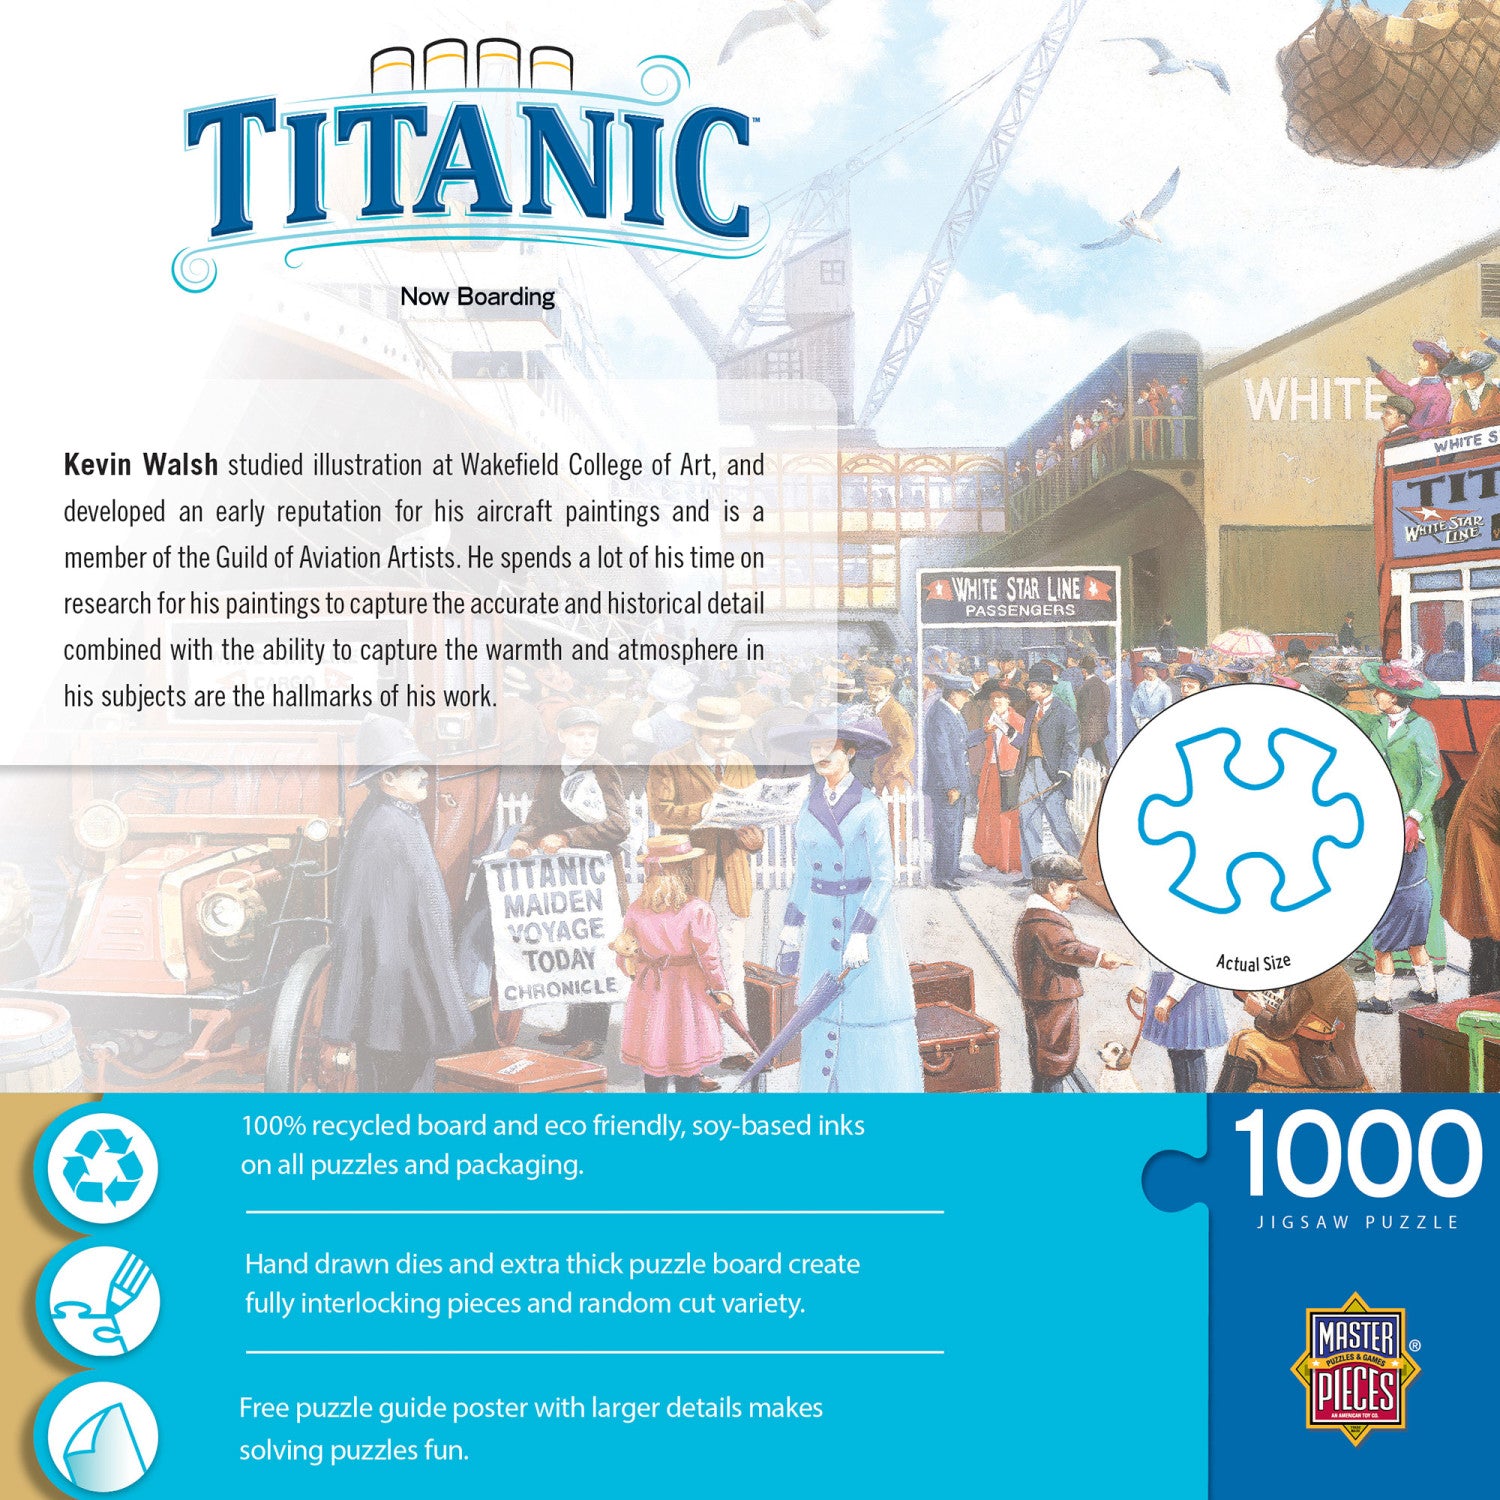 Titanic - Now Boarding 1000 Piece Jigsaw Puzzle